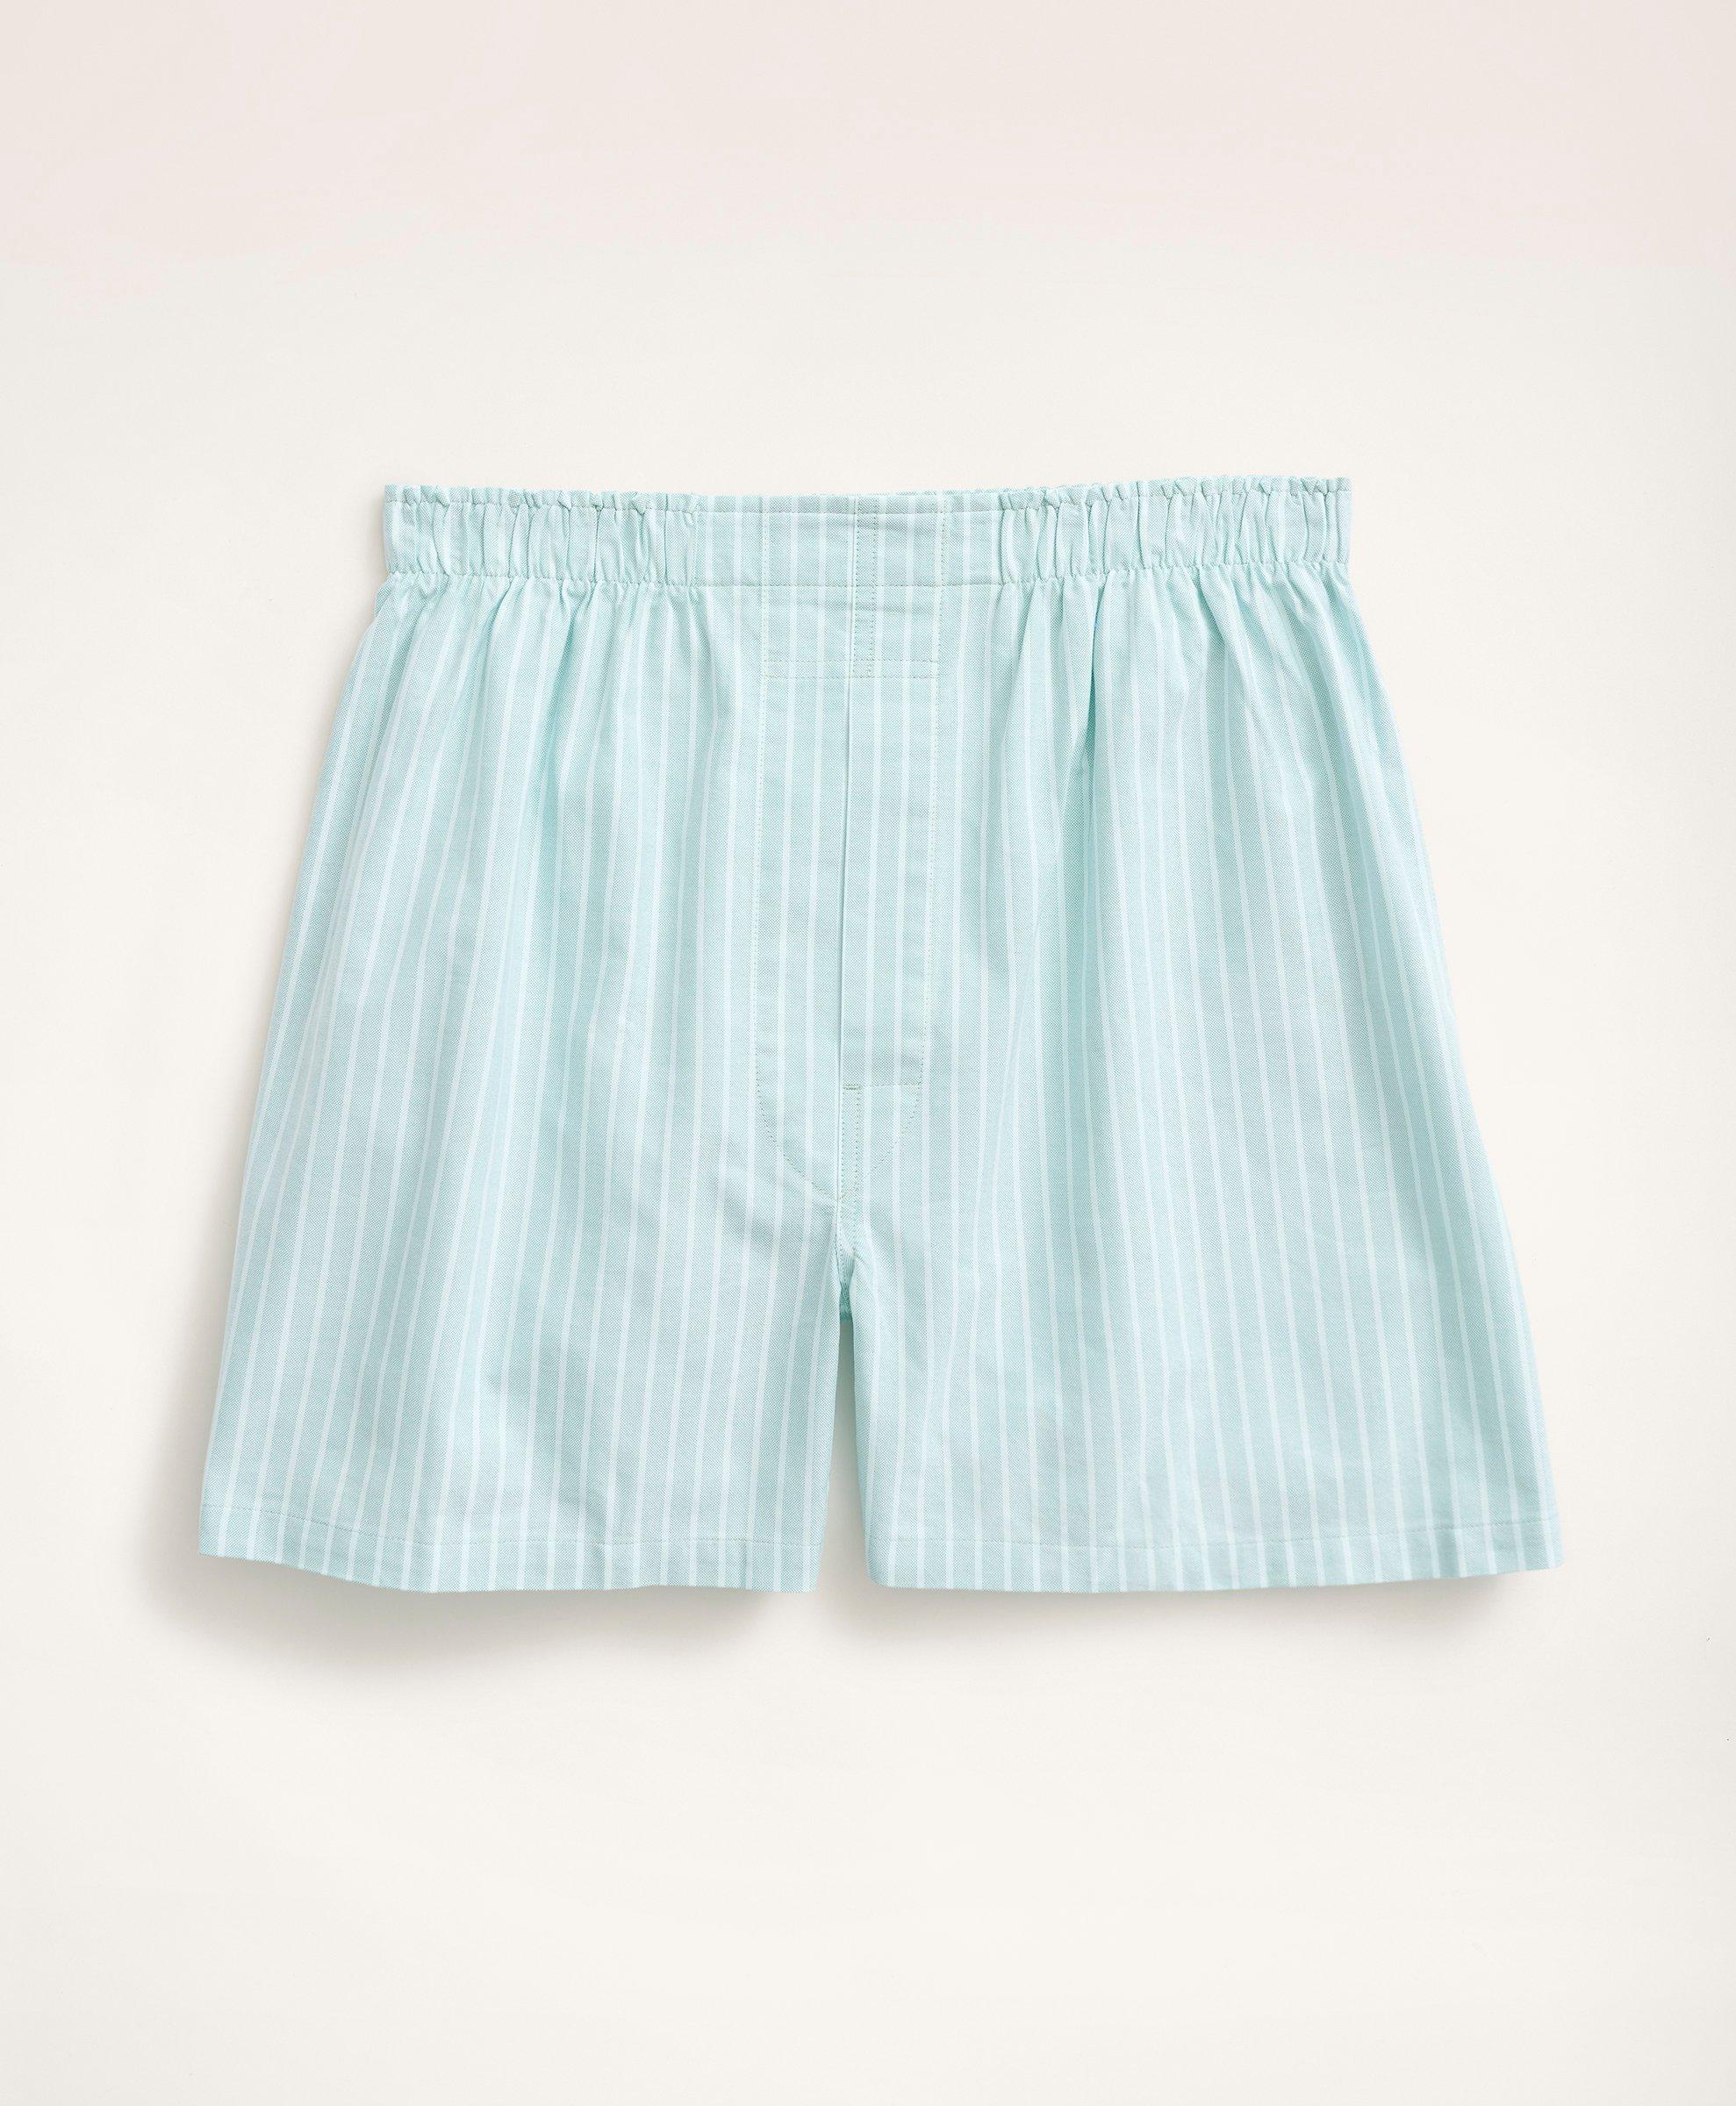 Men's Light Blue Striped Cotton Boxer Shorts